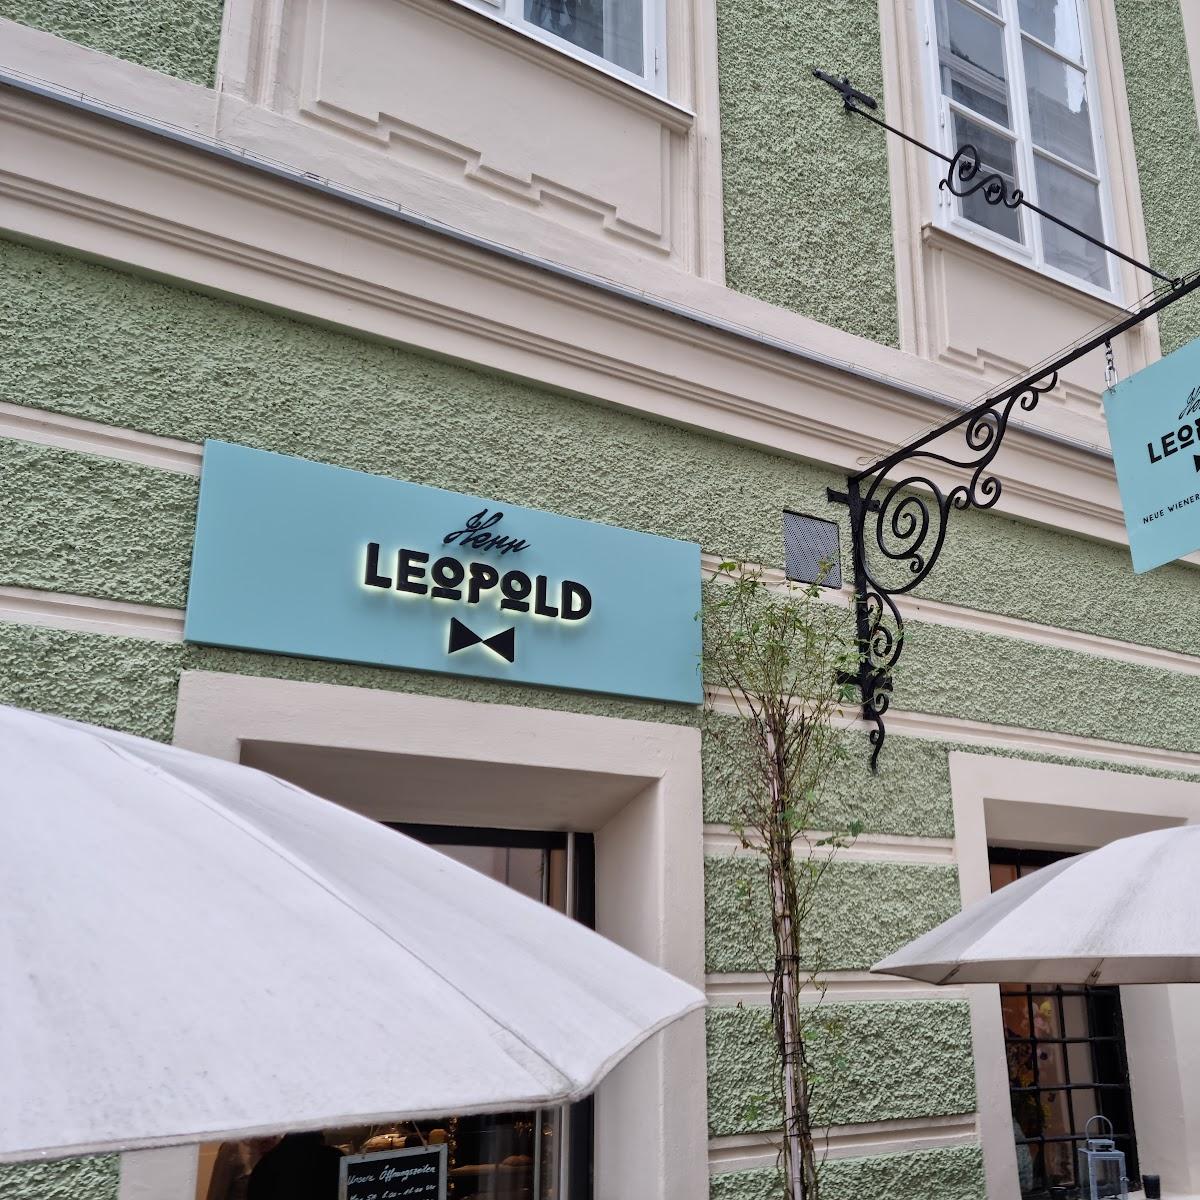 Restaurant "Herr Leopold - Neue Wiener Kaffeehauskultur" in Salzburg